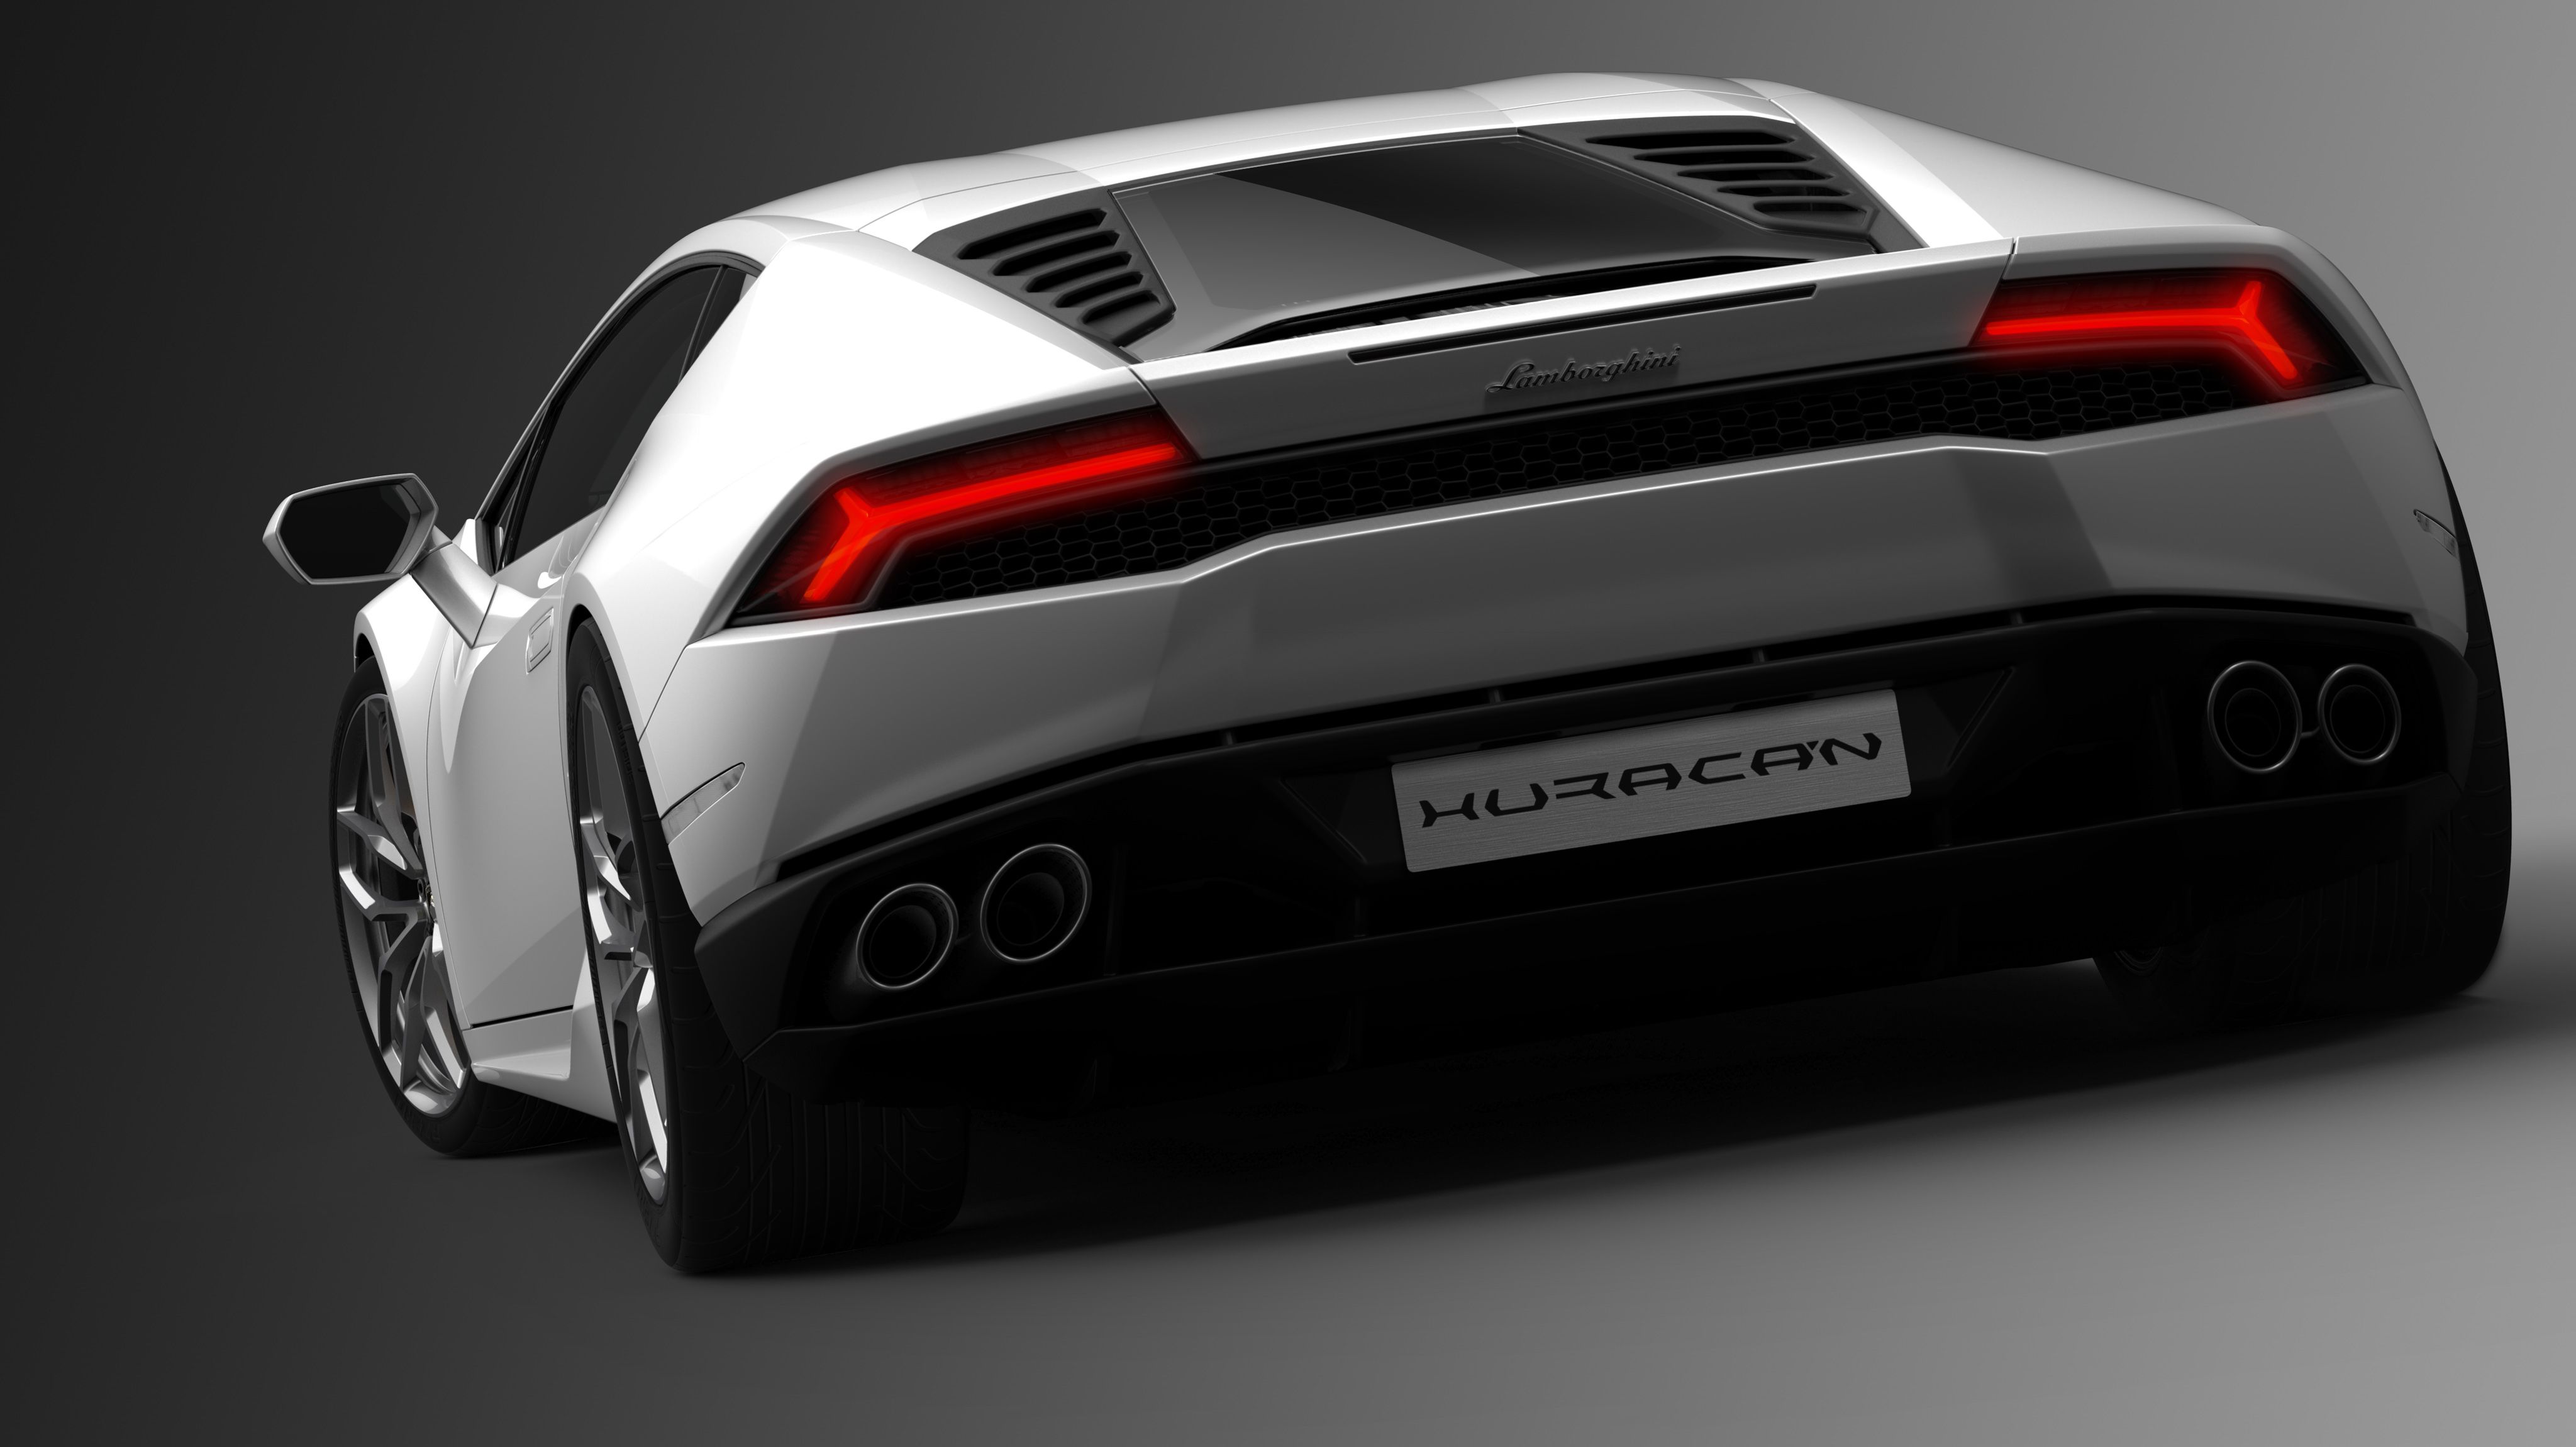 2015 - 2016 Lamborghini Huracán LP 610-4